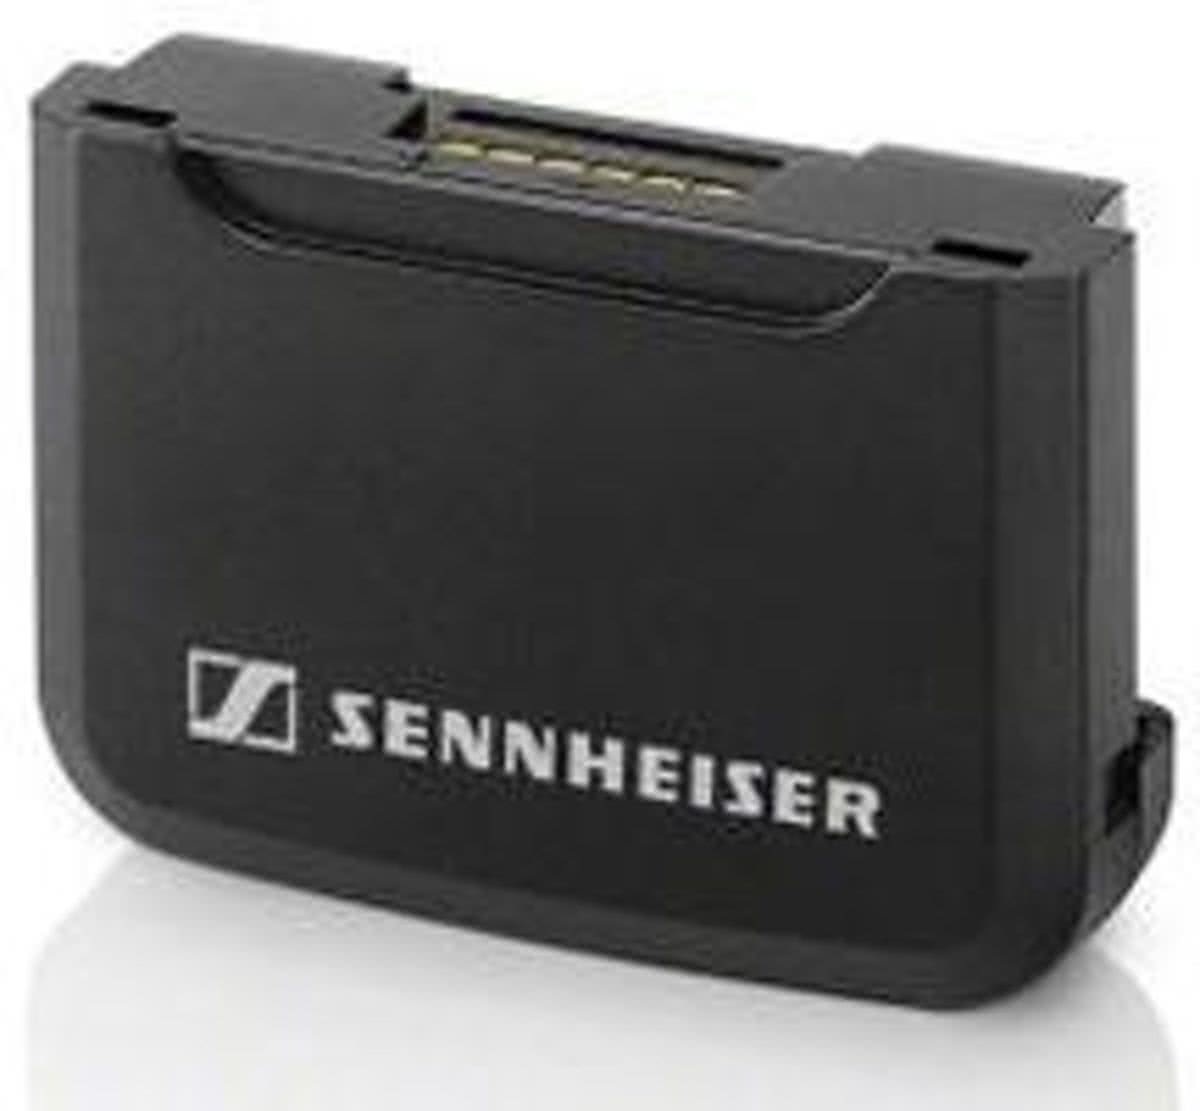 Sennheiser BA 30 Battery Pack voor SK AVX